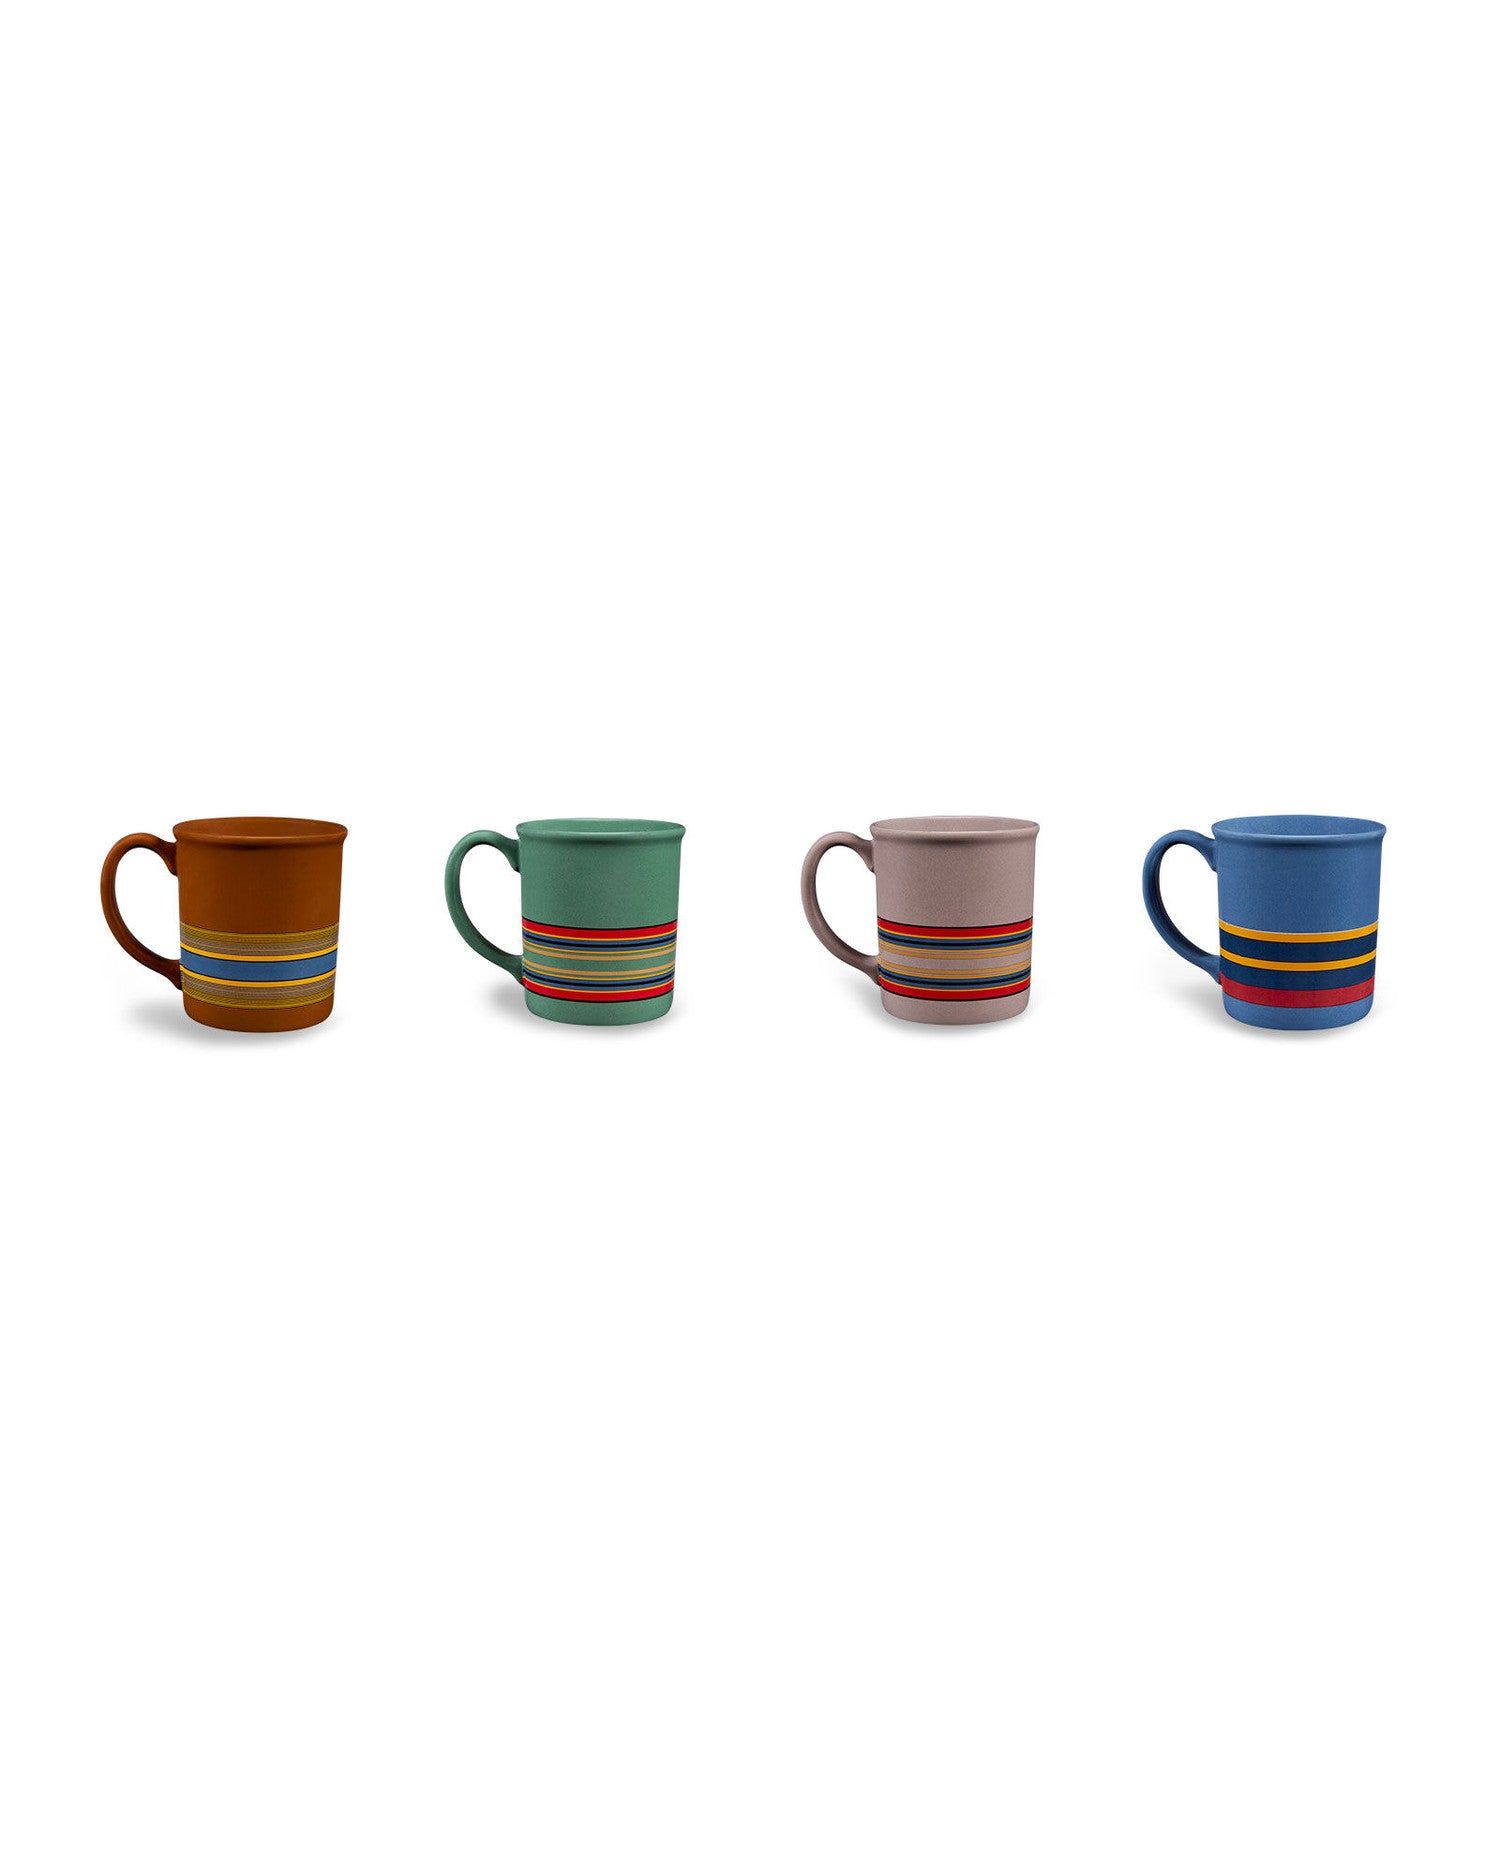 Pendleton | Tapered Mugs | Set of 4 | Tartan Mug Set Collection